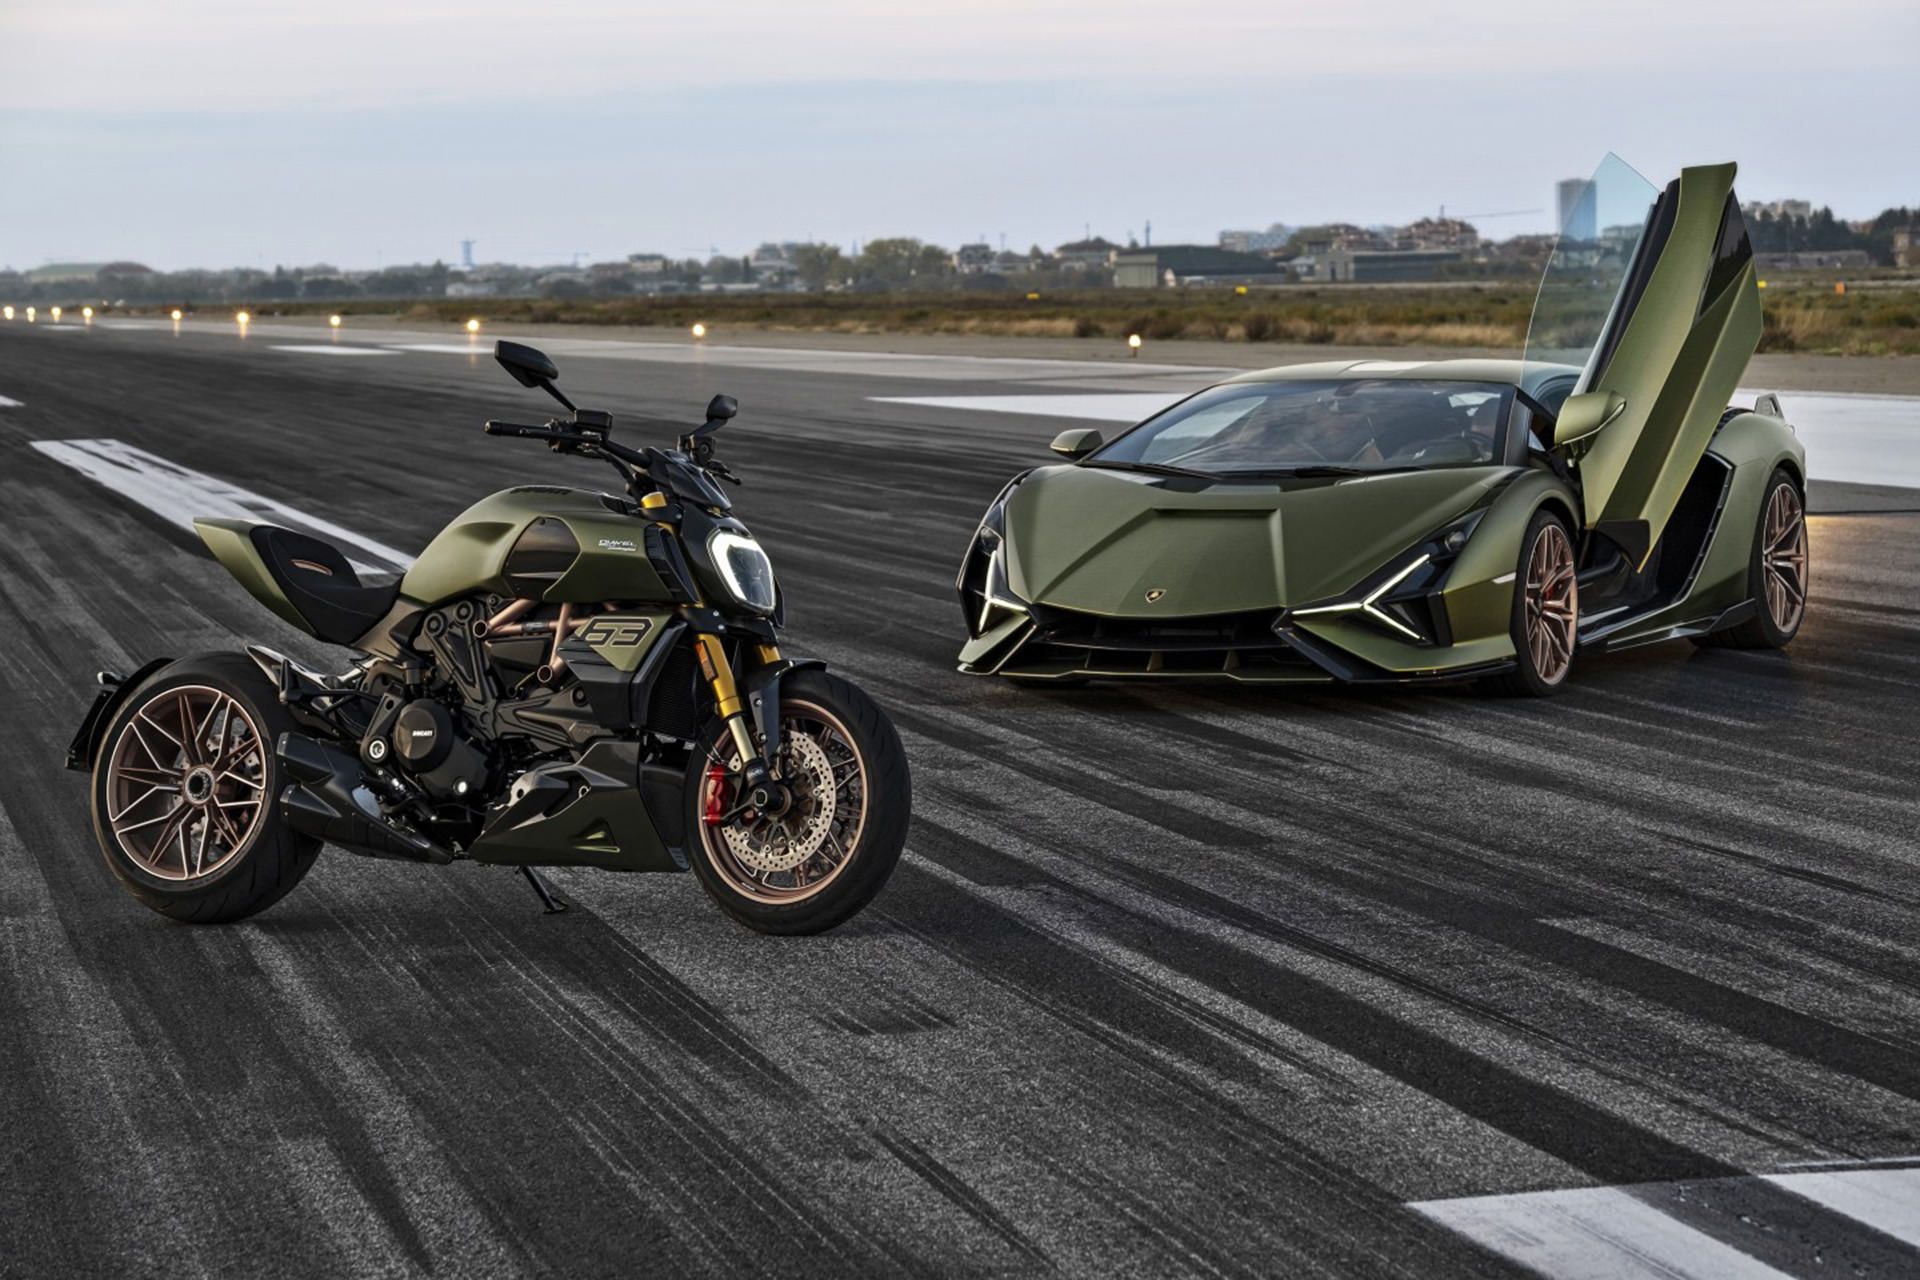 نمای جانبی موتورسیکلت دوکاتی دیاول 1260 لامبورگینی / Ducati Diavel 1260 Lamborghini motorcycle سبز رنگ در کنار ابرخودرو لامبورگینی سیان در جاده